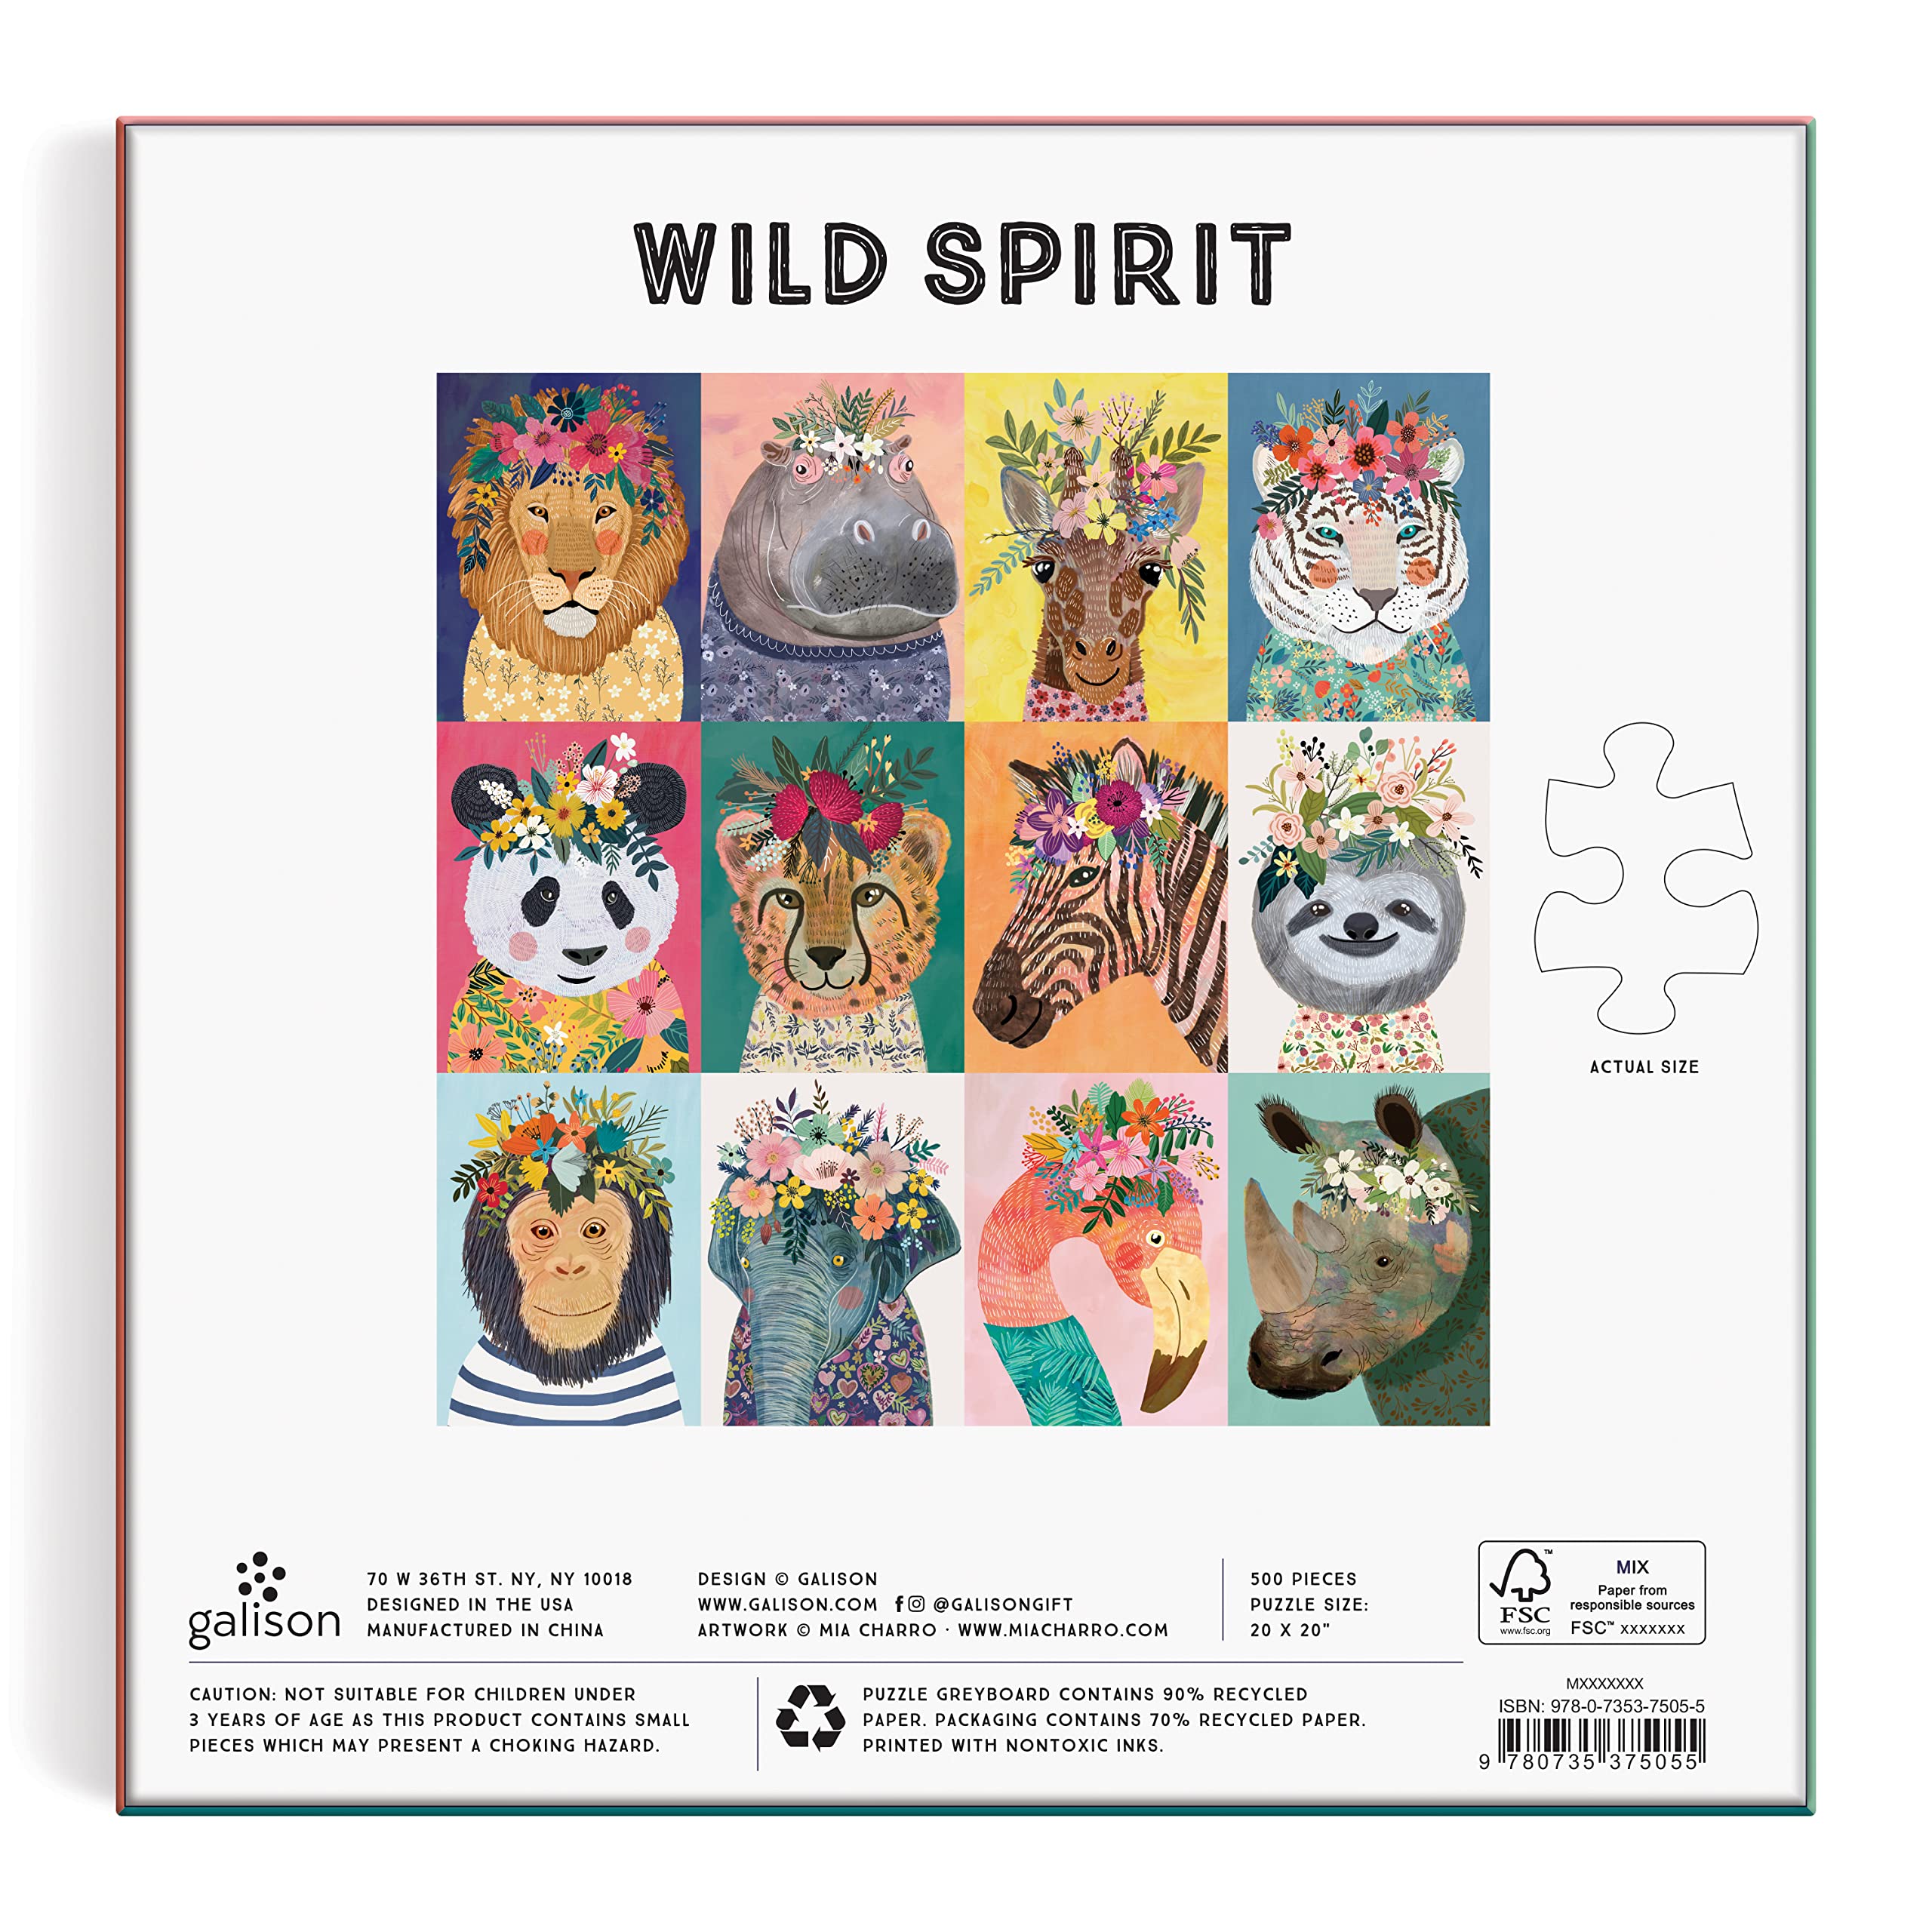 Wild Spirit 500 Piece Puzzle from Galison - 20